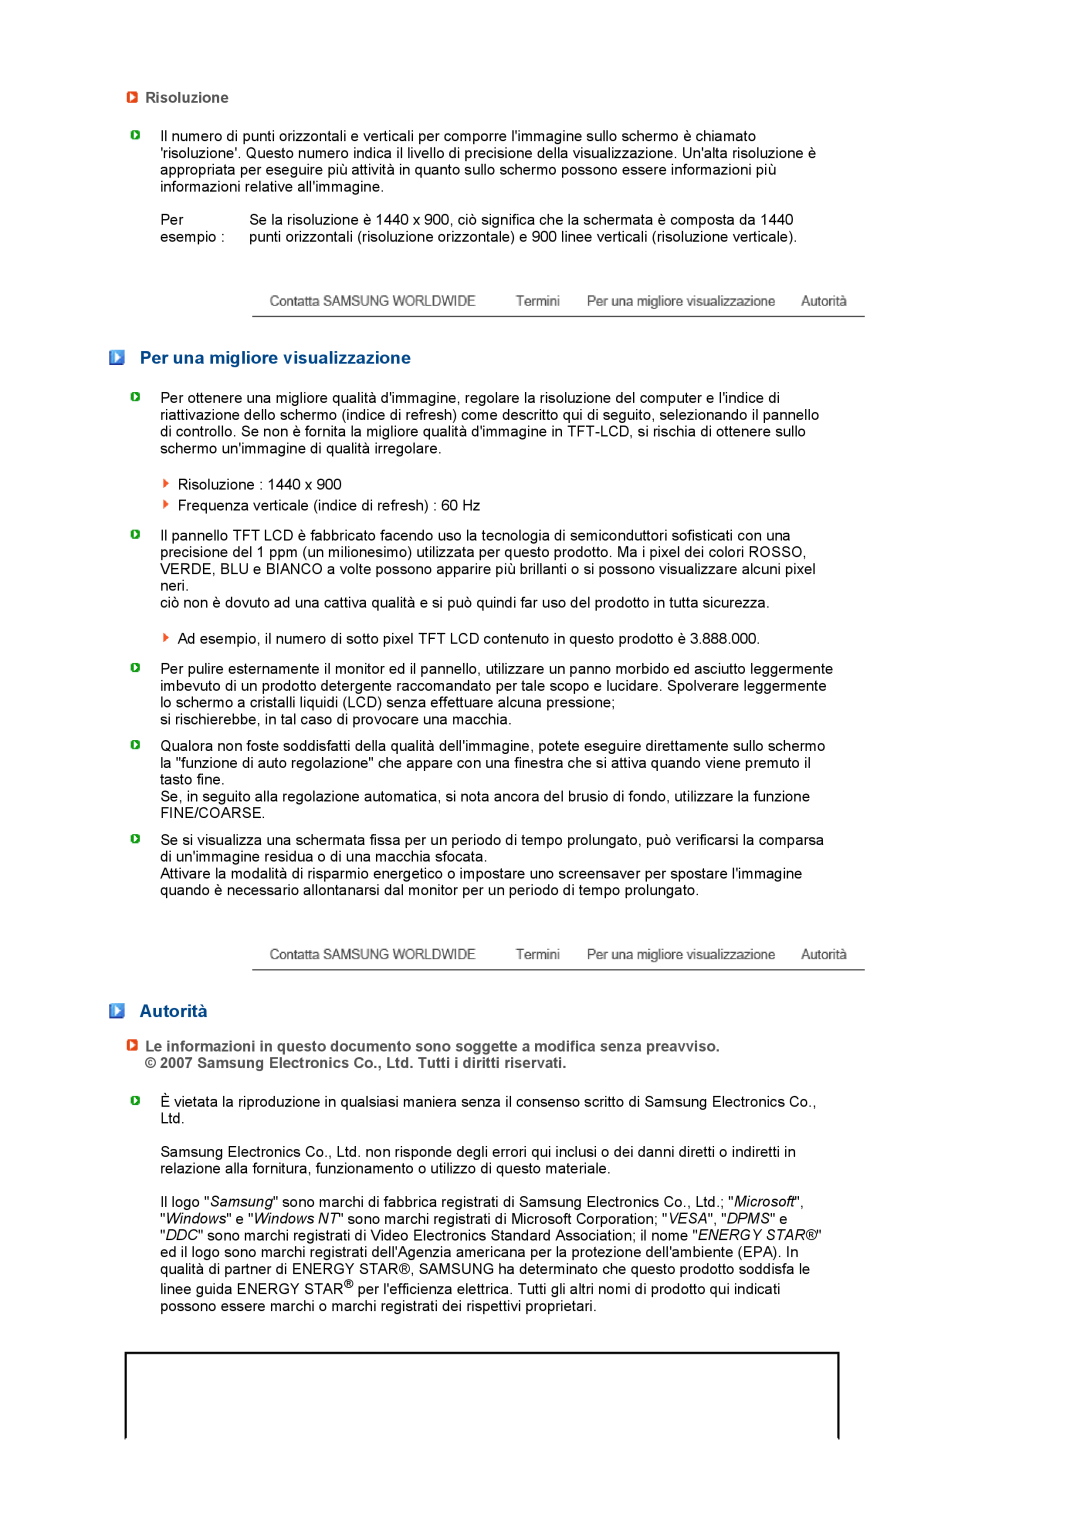 Samsung LS17PENSF/CLT manual Per una migliore visualizzazione, Autorità, Risoluzione 